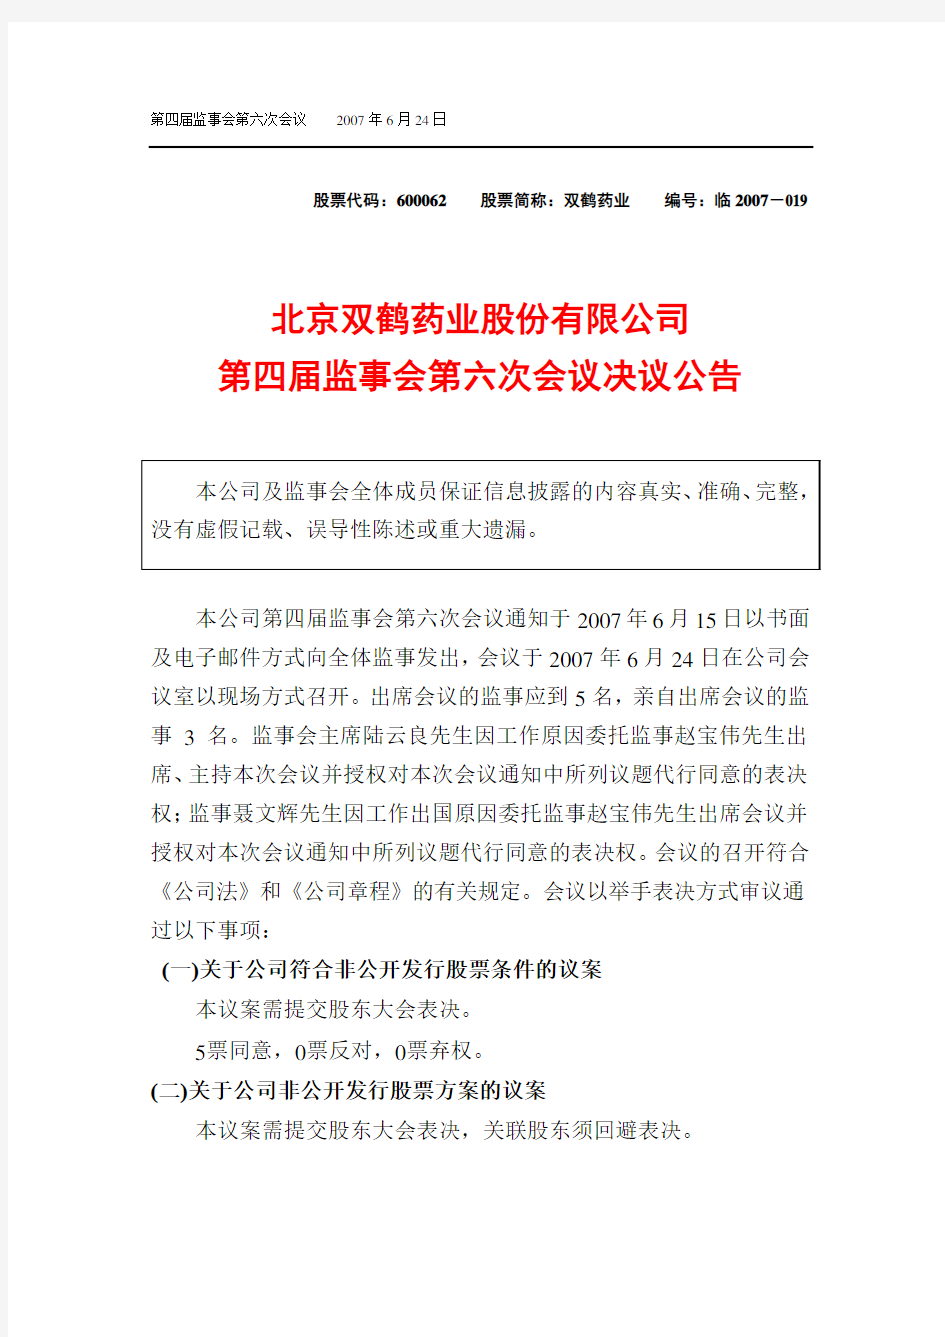 北京双鹤药业股份有限公司第四届监事会第六次会议决议公告